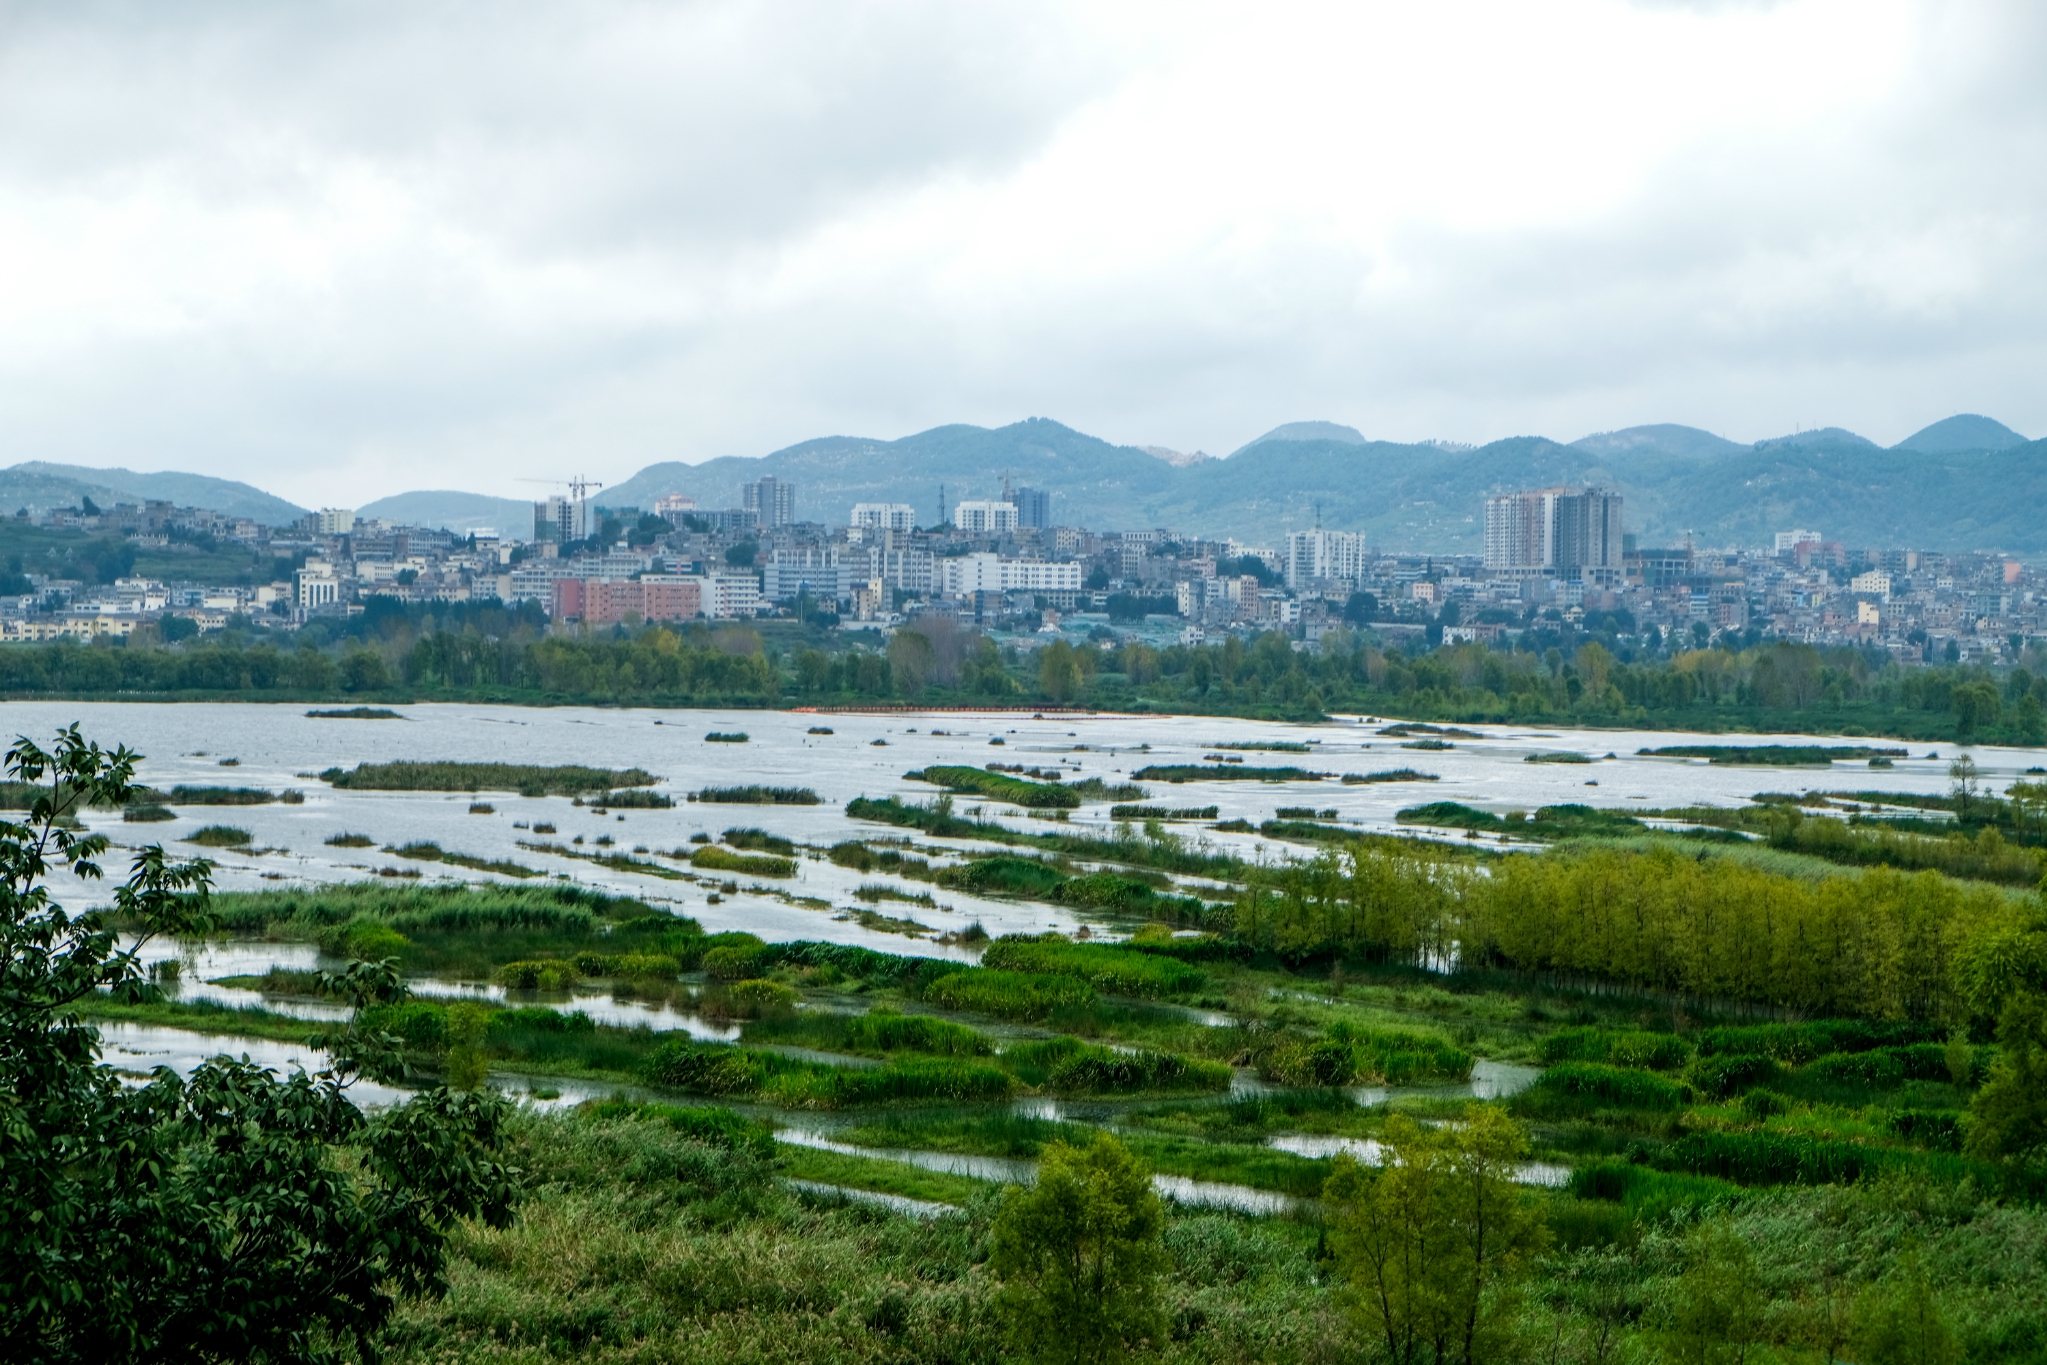 【携程攻略】云南草海景点,泸沽湖的草海位于四川省内，是从四川经泸沽湖景区的第一个景点，草海…